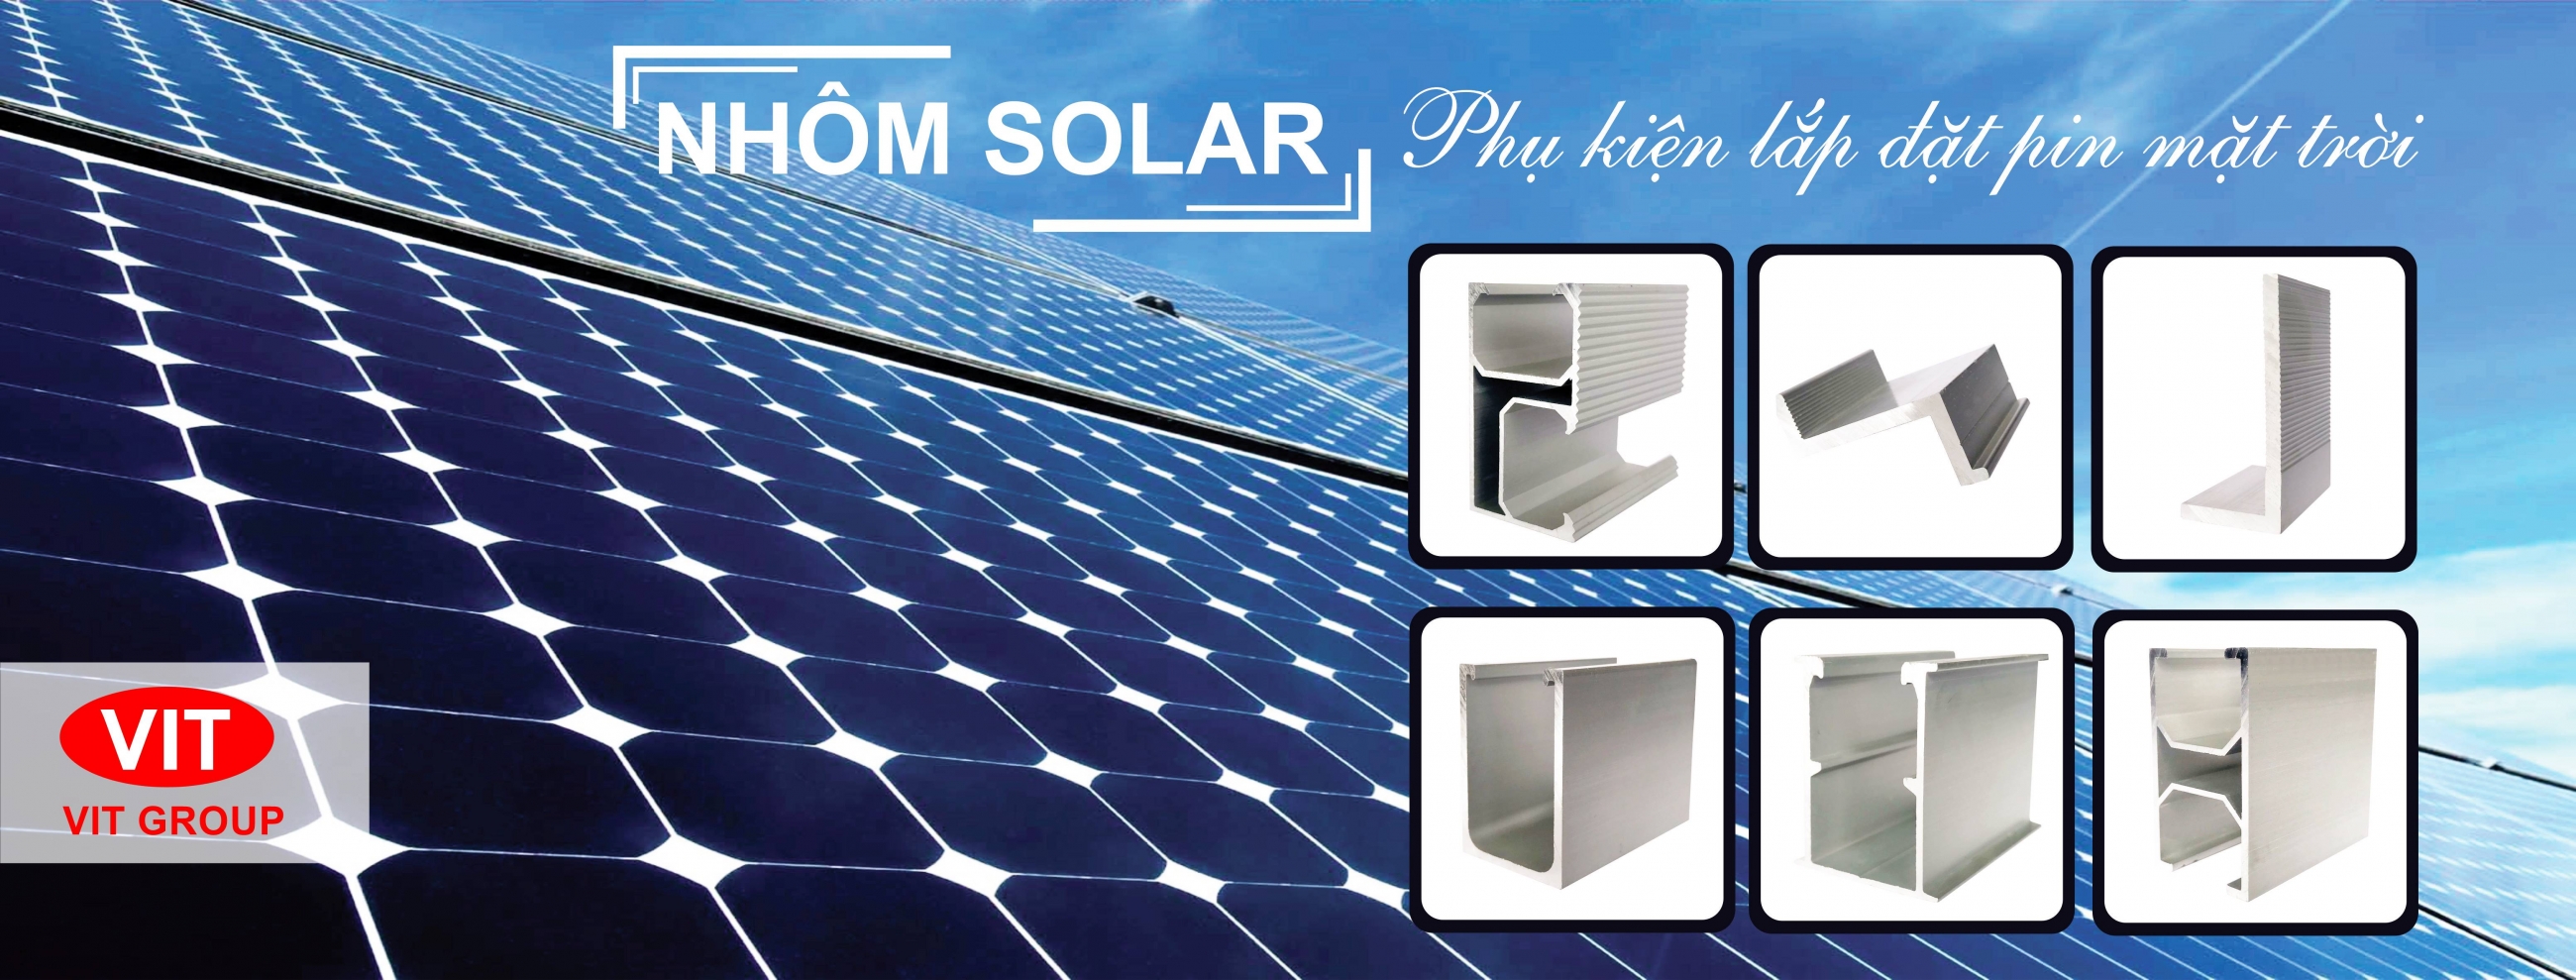 Nhôm Solar - Phụ kiện lắp đặt pin mặt trời